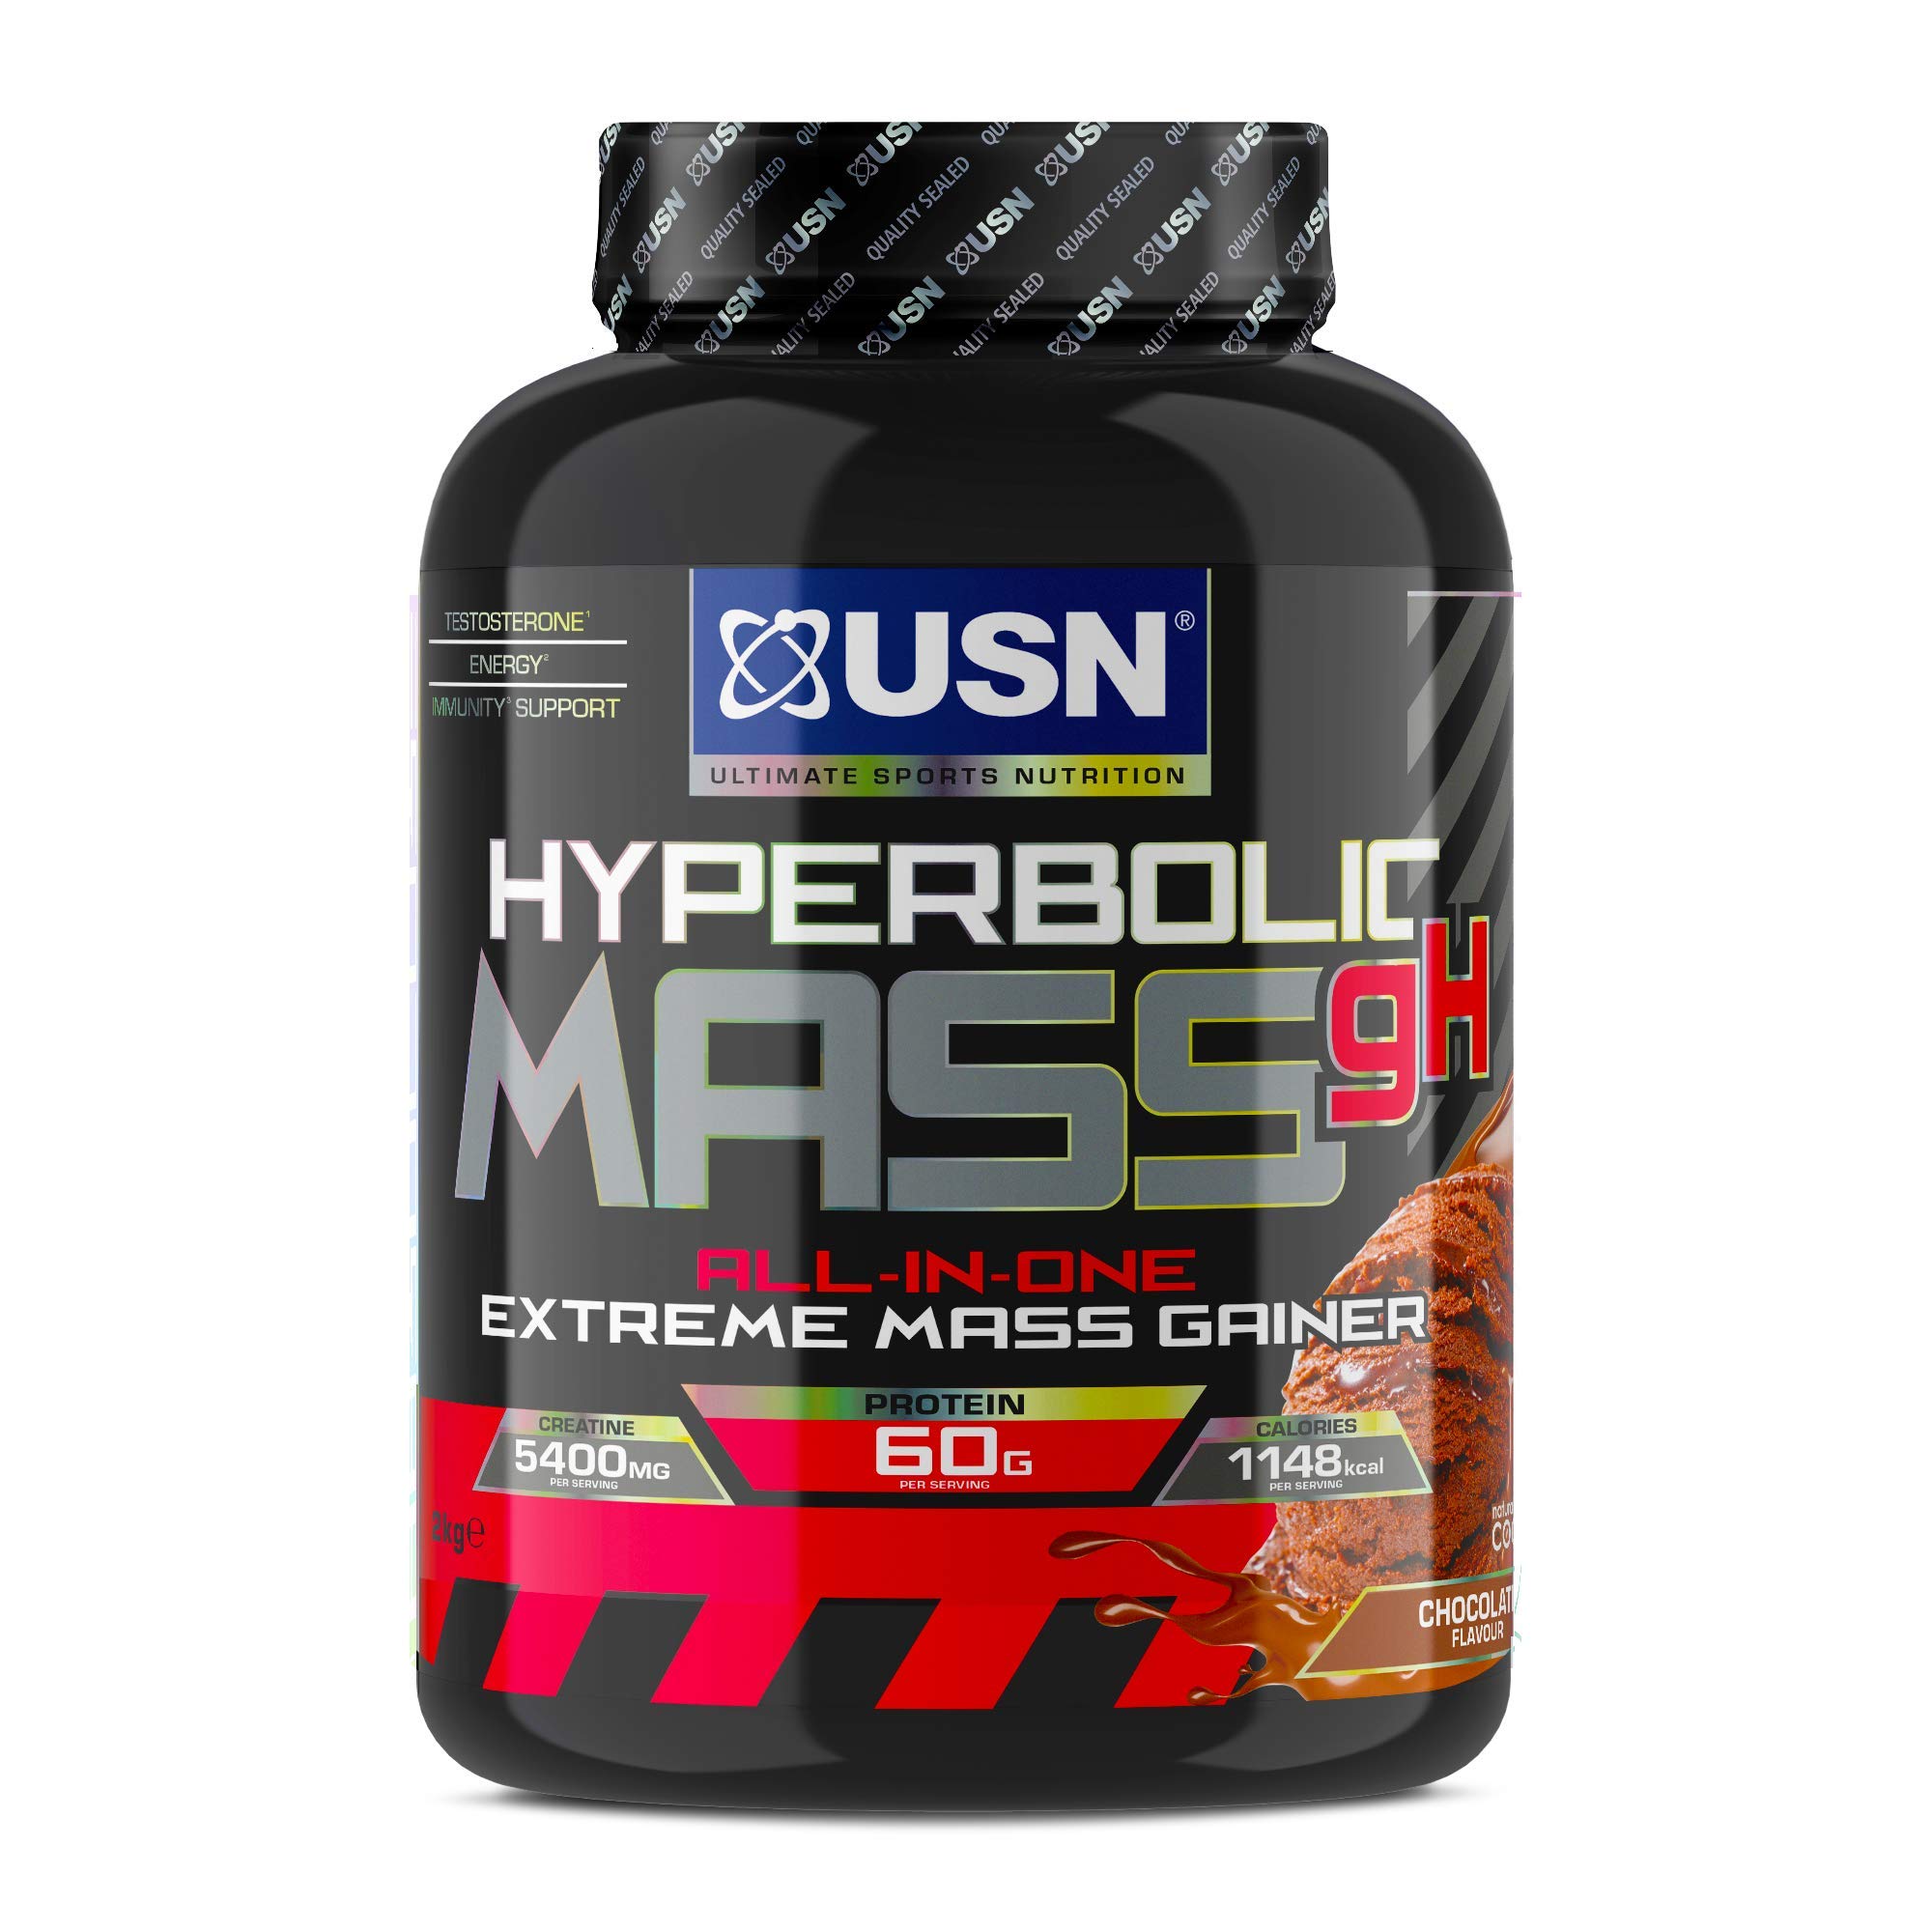 USN Hyperbolic Mass gH: All-in-One Mass-Gainer-Proteinpulver für schnelle, effektive Gewichts- und Muskelmassenzunahme, Pre- and Post-Workout Weight Gainer Komplex, Schokolade, 2kg